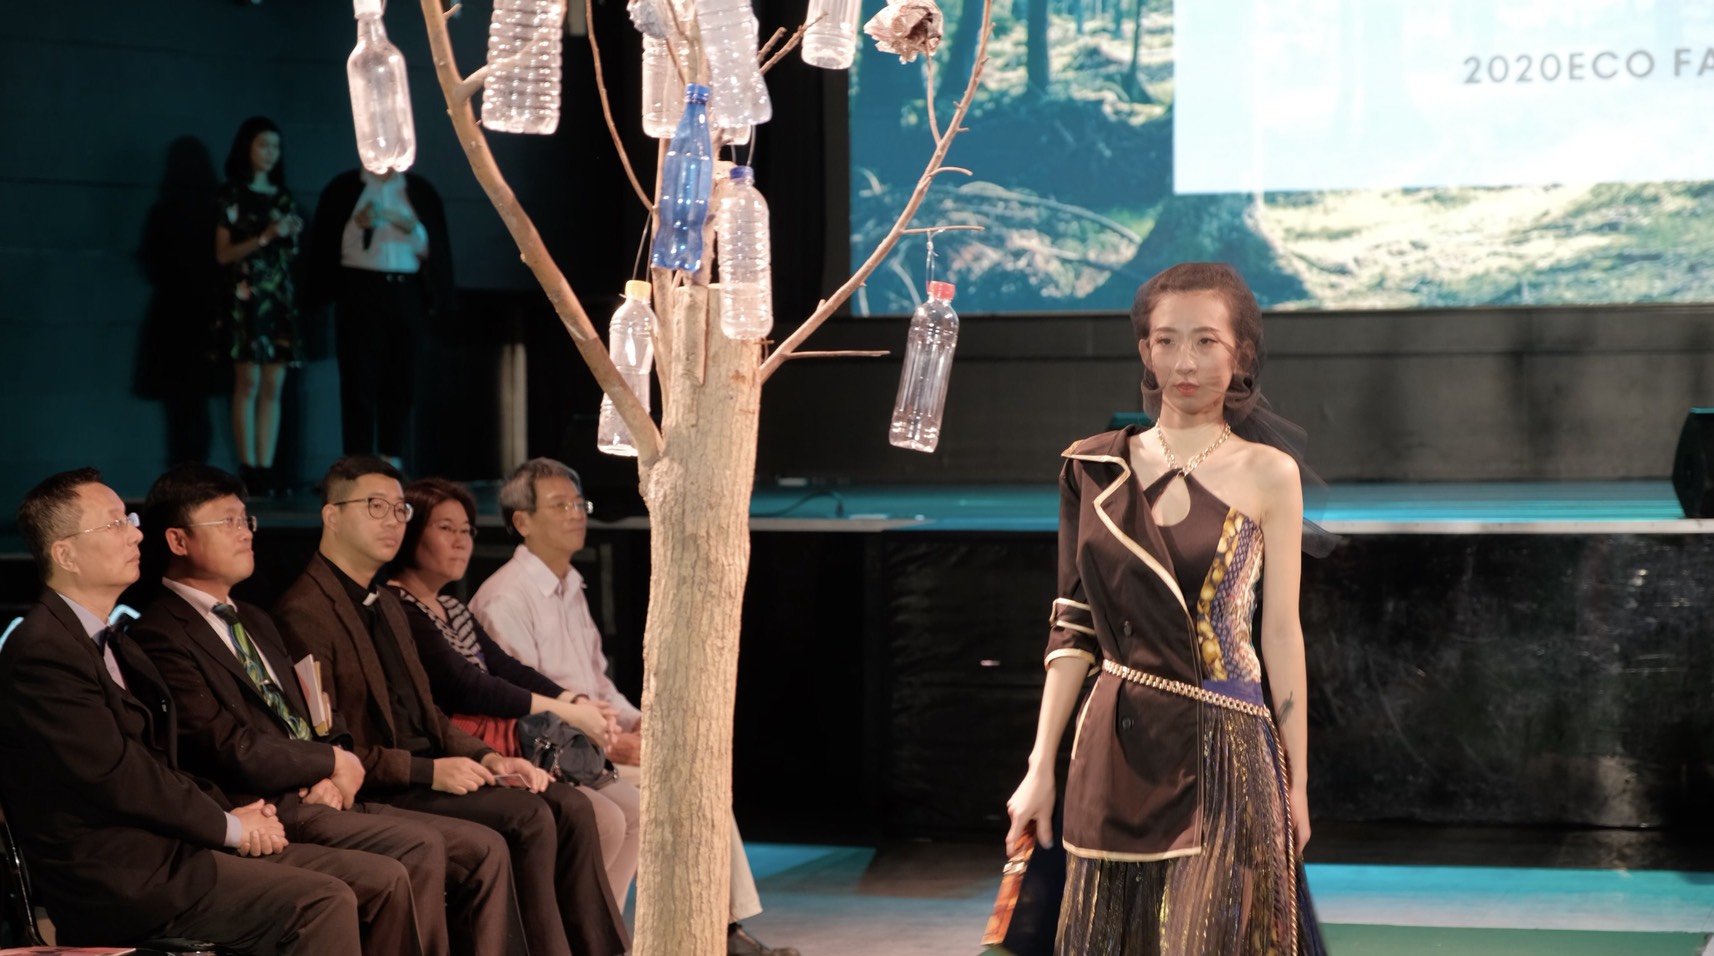 2019年Formosa永續時尚設計獎佳作得主江玟諺將老舊套頭毛衣重新剪裁設計成新的洋裝，讓衣料重獲新的價值與永續時尚。